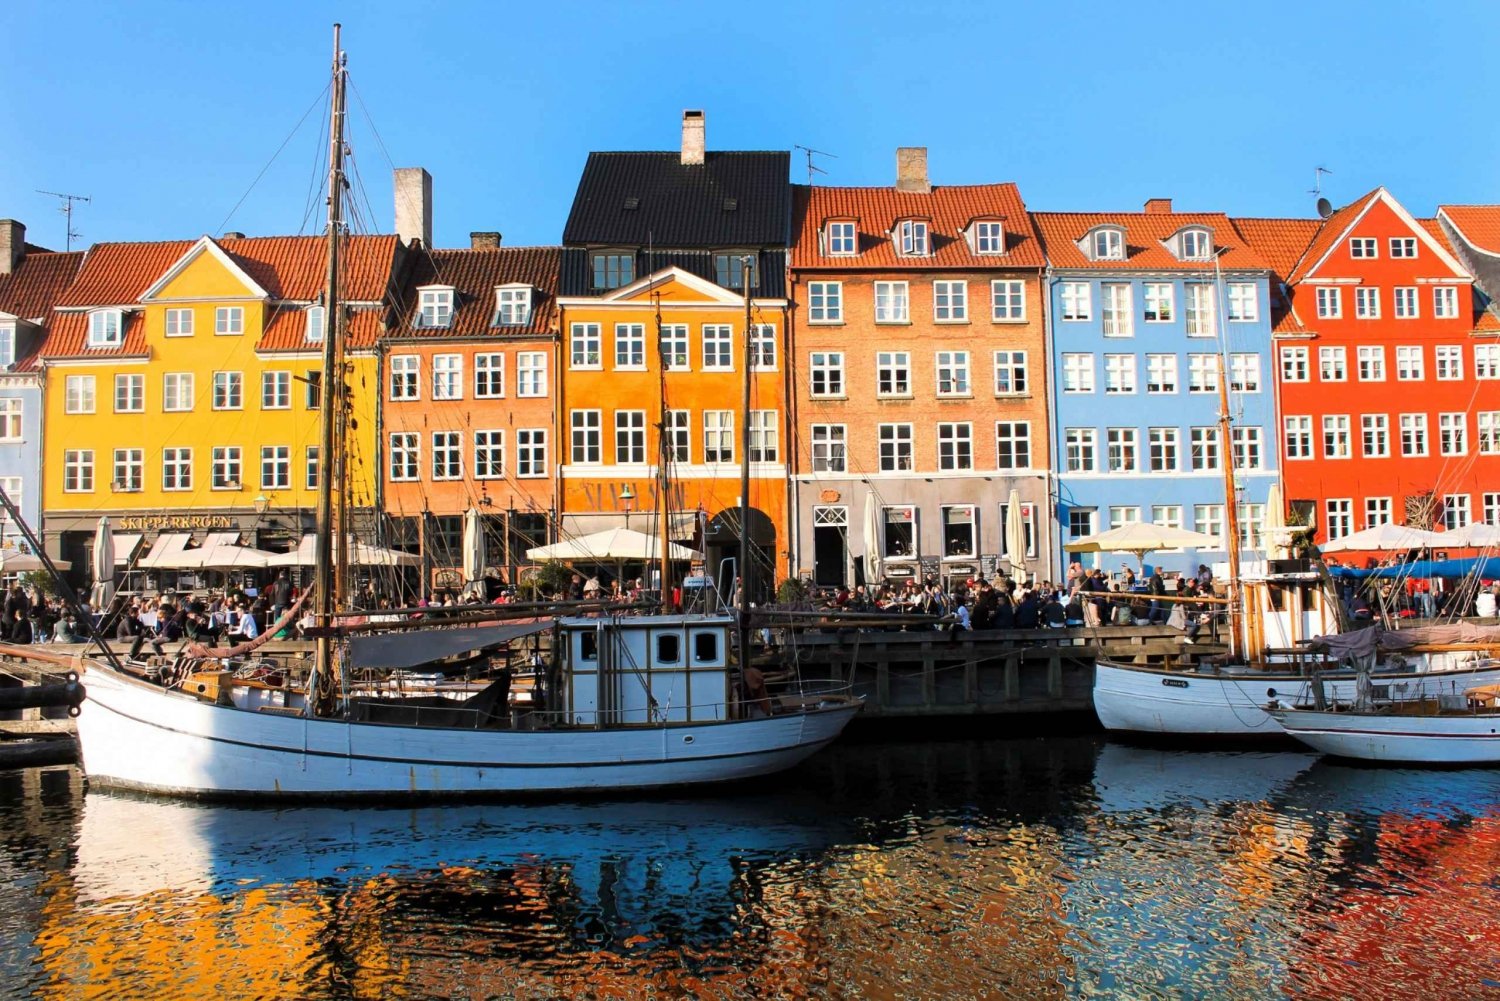 Kopenhagen: app-gebaseerd stadsverkenningsspel en rondleiding